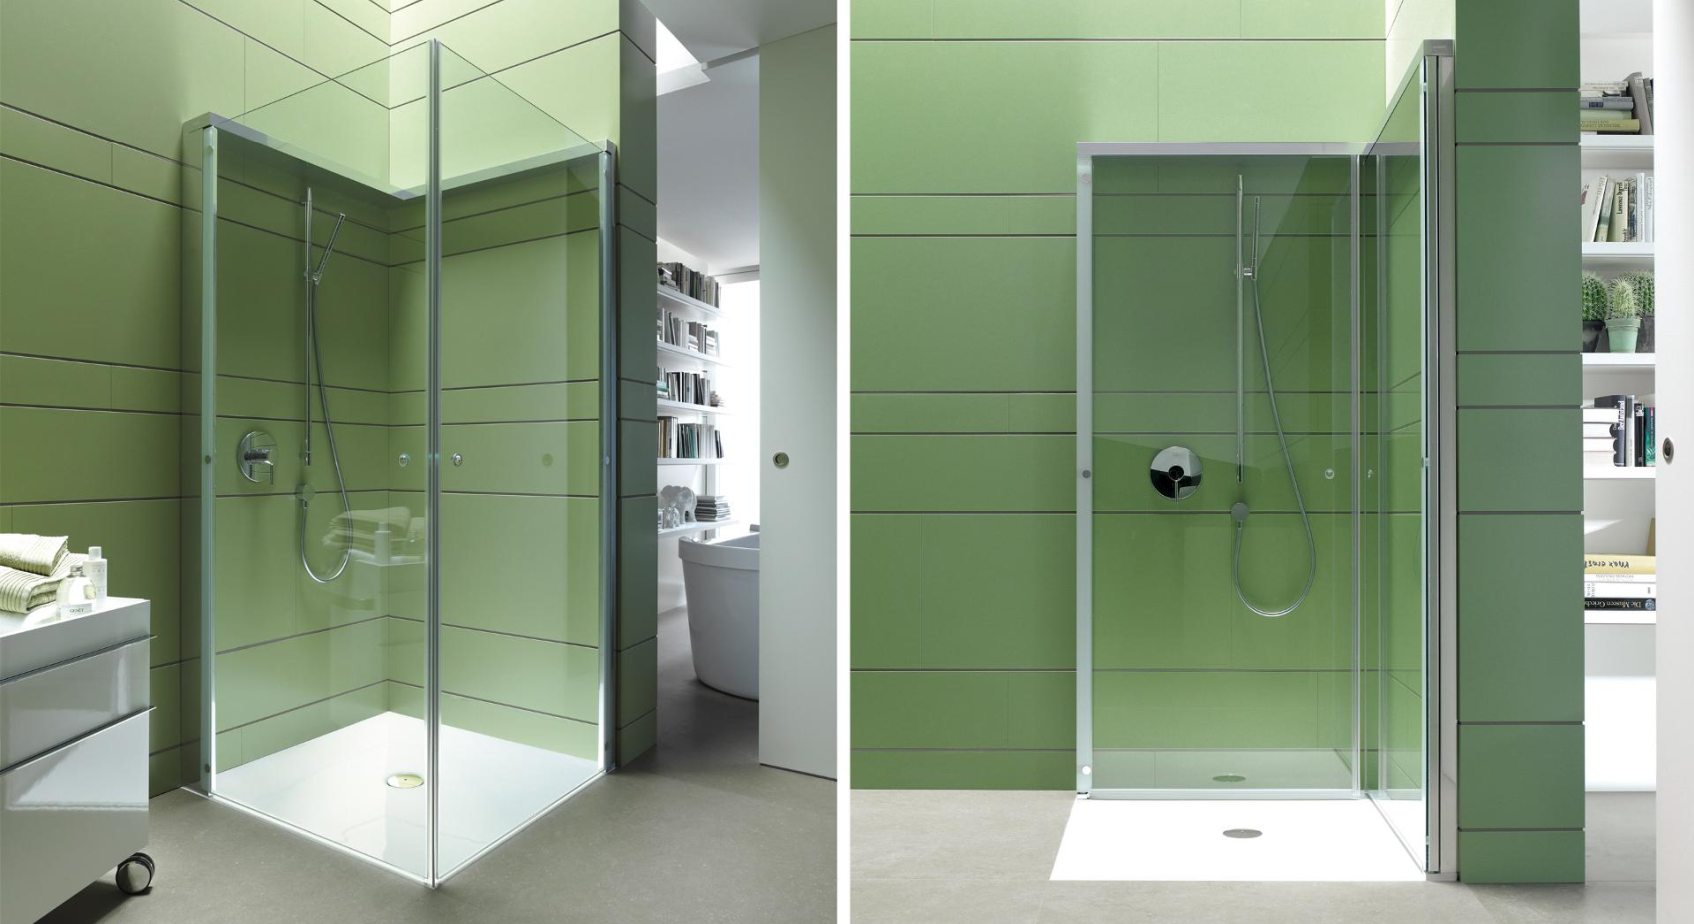 Duravit OpenSpace  B– mała łazienka – kabina prysznicowa kwadratowa/ kabina prysznicowa prostokątna/kabina składana – łazienka z prysznicem – lazienkarium.pl – opinie, aranżacje, inspiracje, sklep